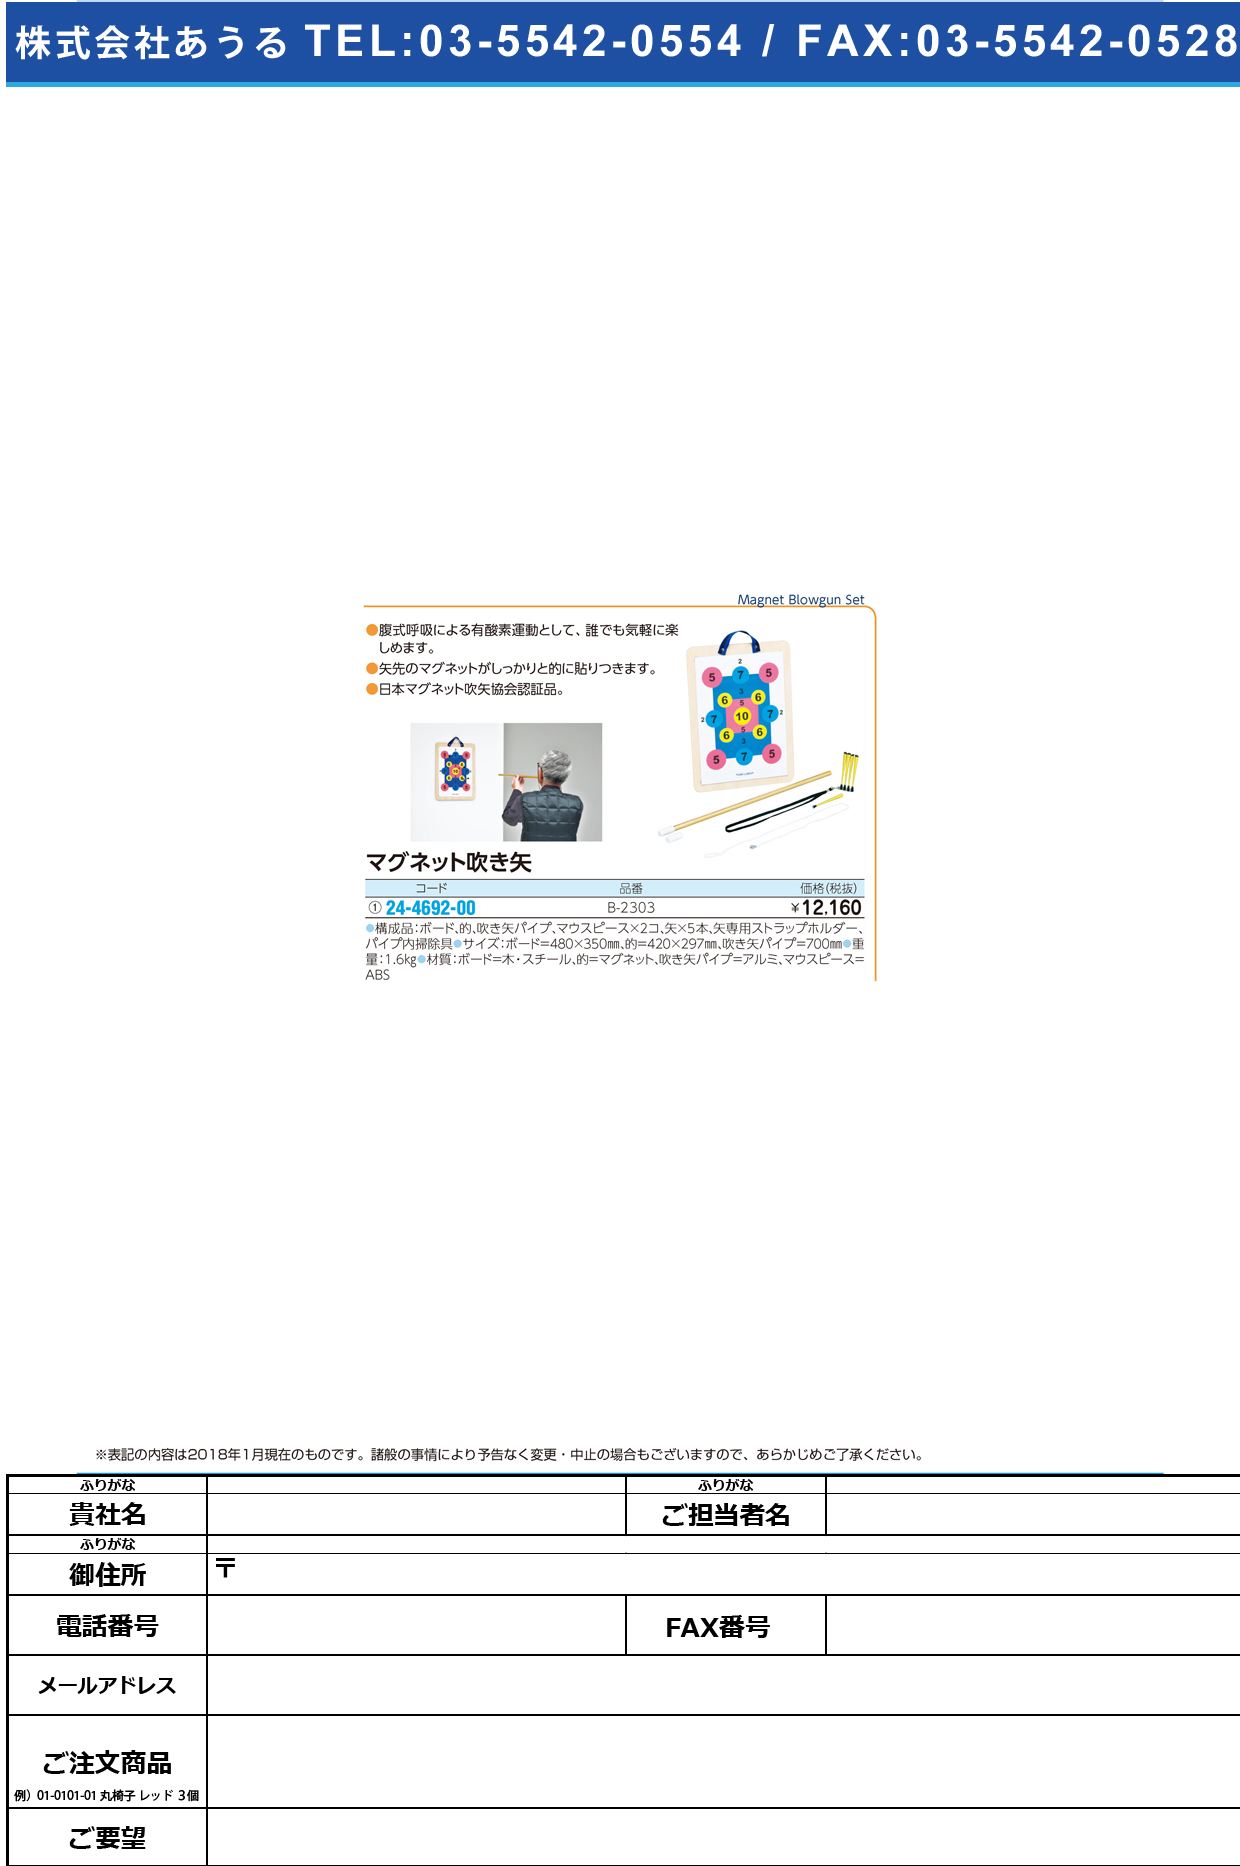 (24-4692-00)マグネット吹き矢 B-2303 ﾏｸﾞﾈｯﾄﾌｷﾔ【1組単位】【2018年カタログ商品】